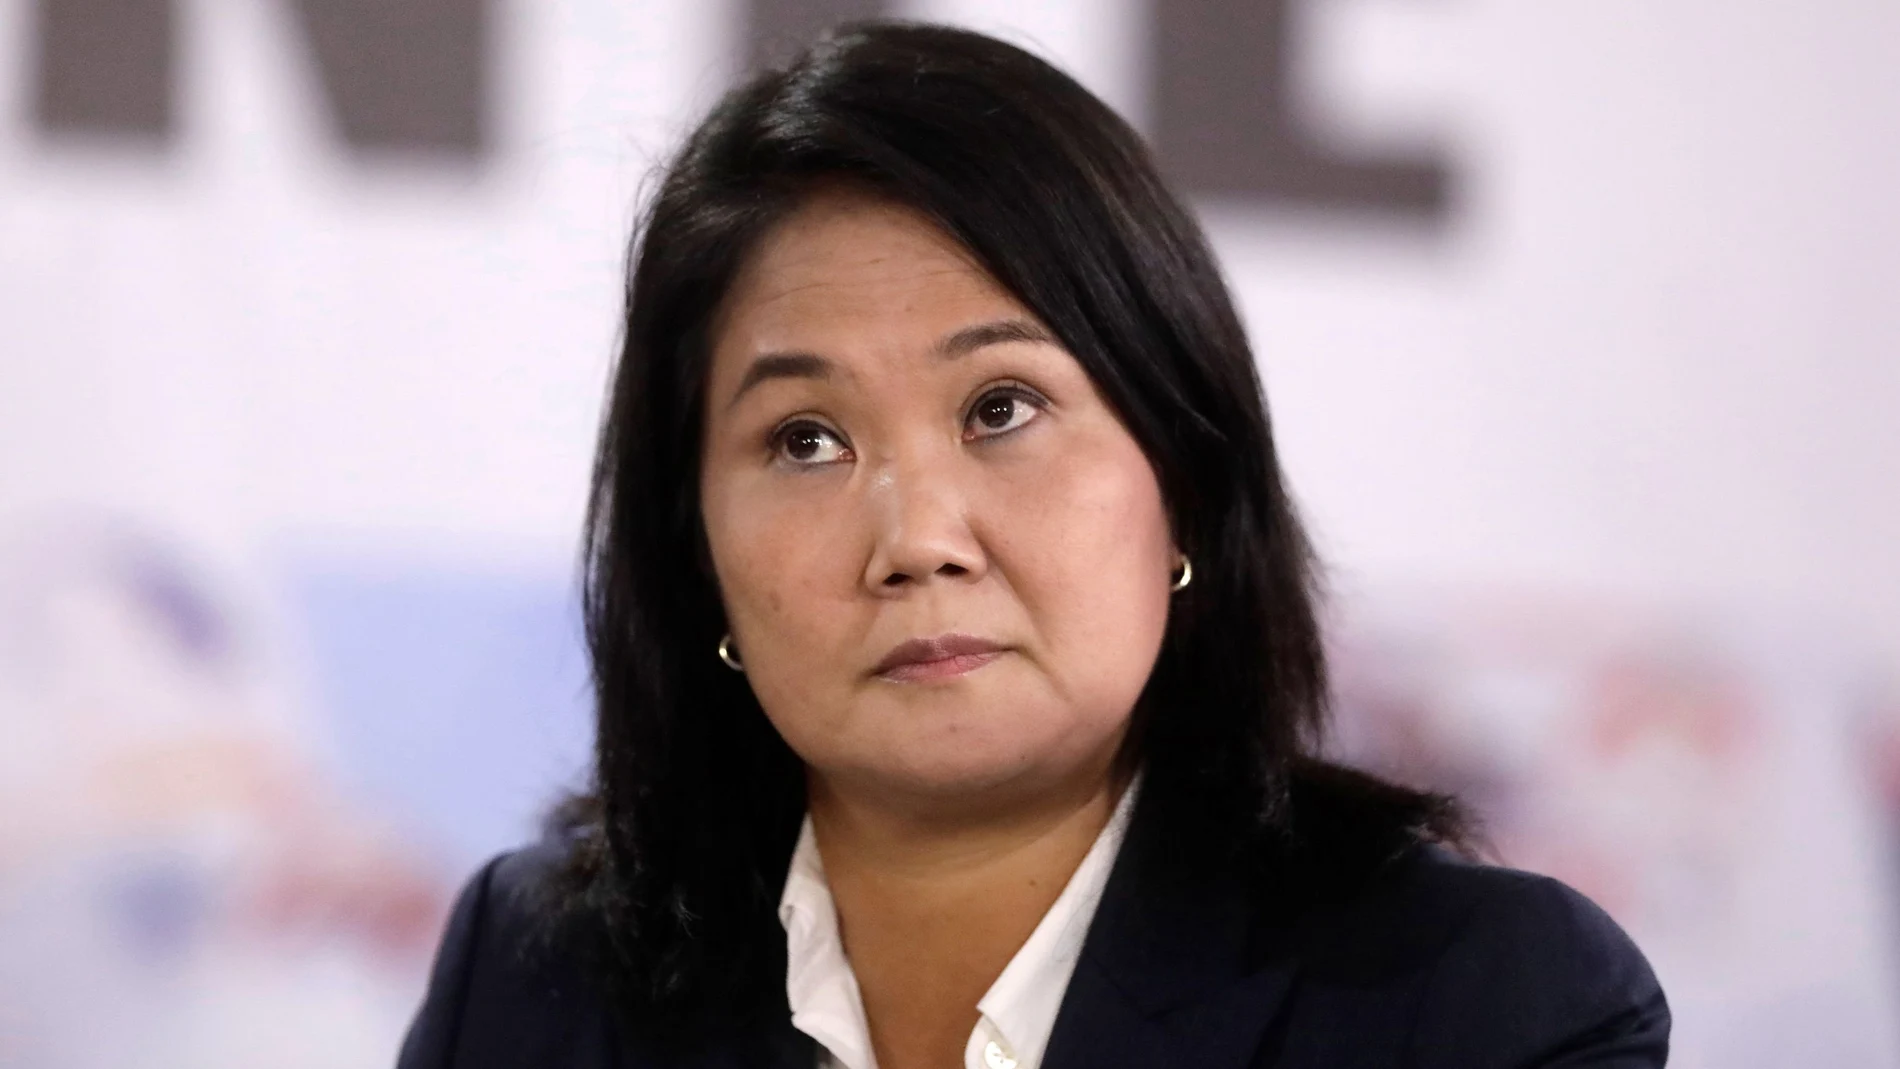 La candidata a las presidenciales de Perú, Keiko Fujimori. REUTERS/Angela Ponce